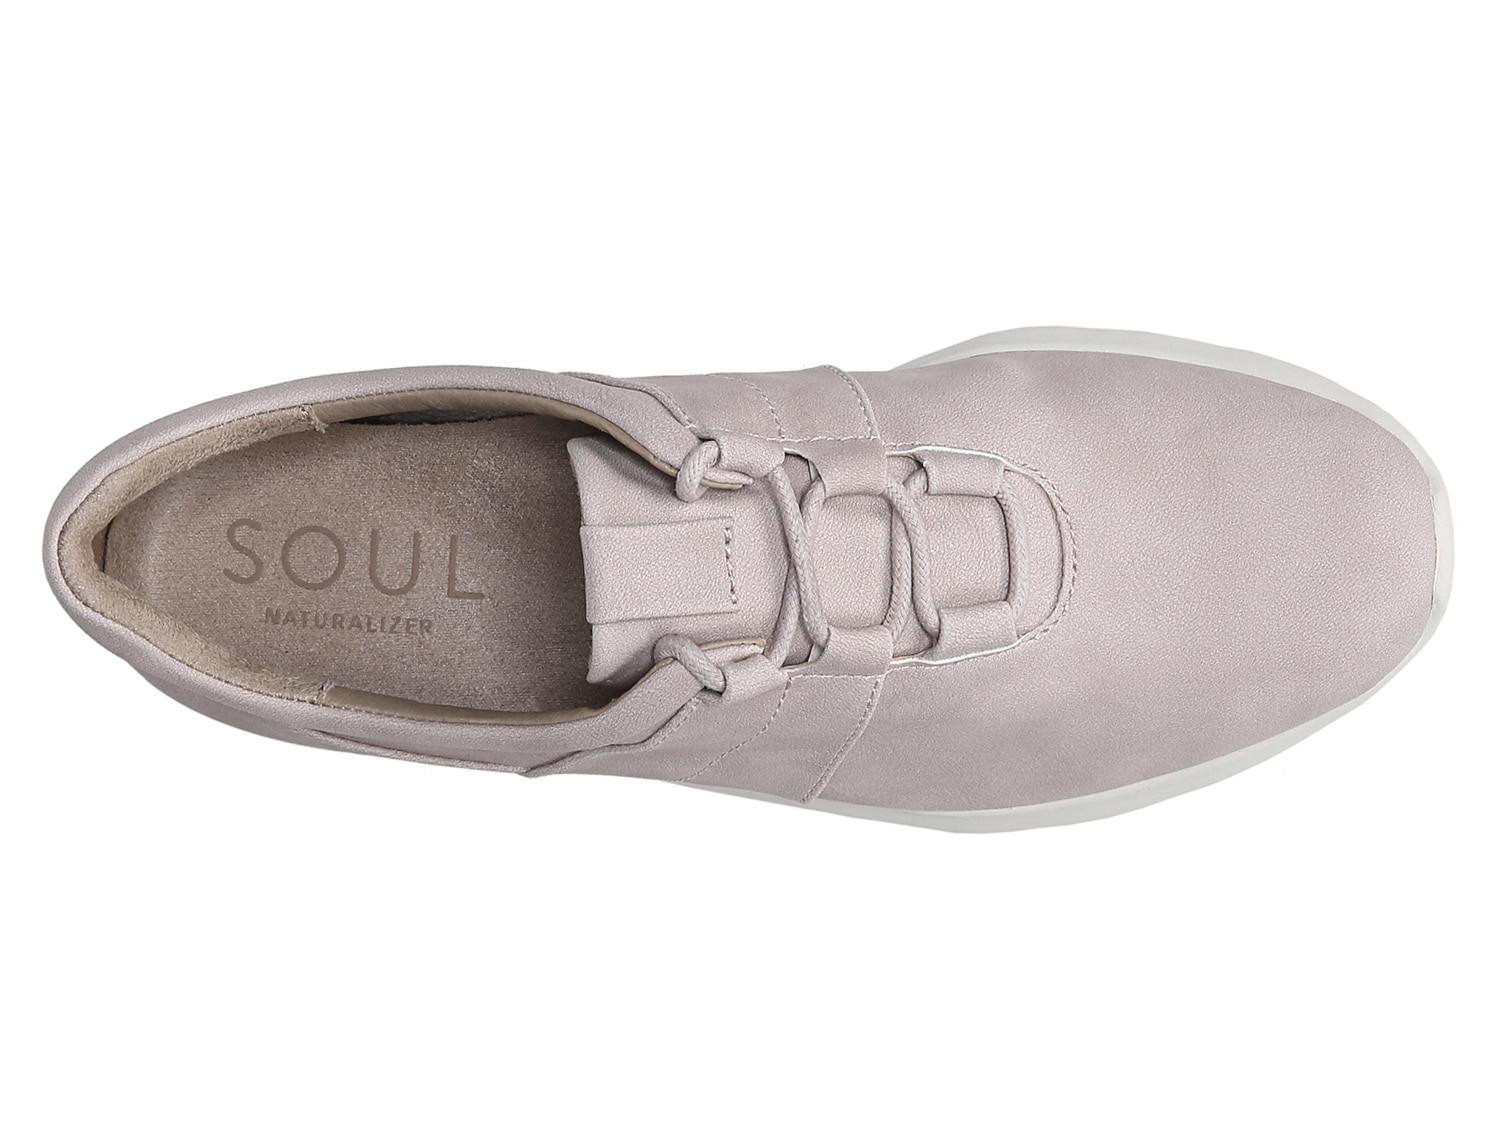 soul naturalizer peace sneaker